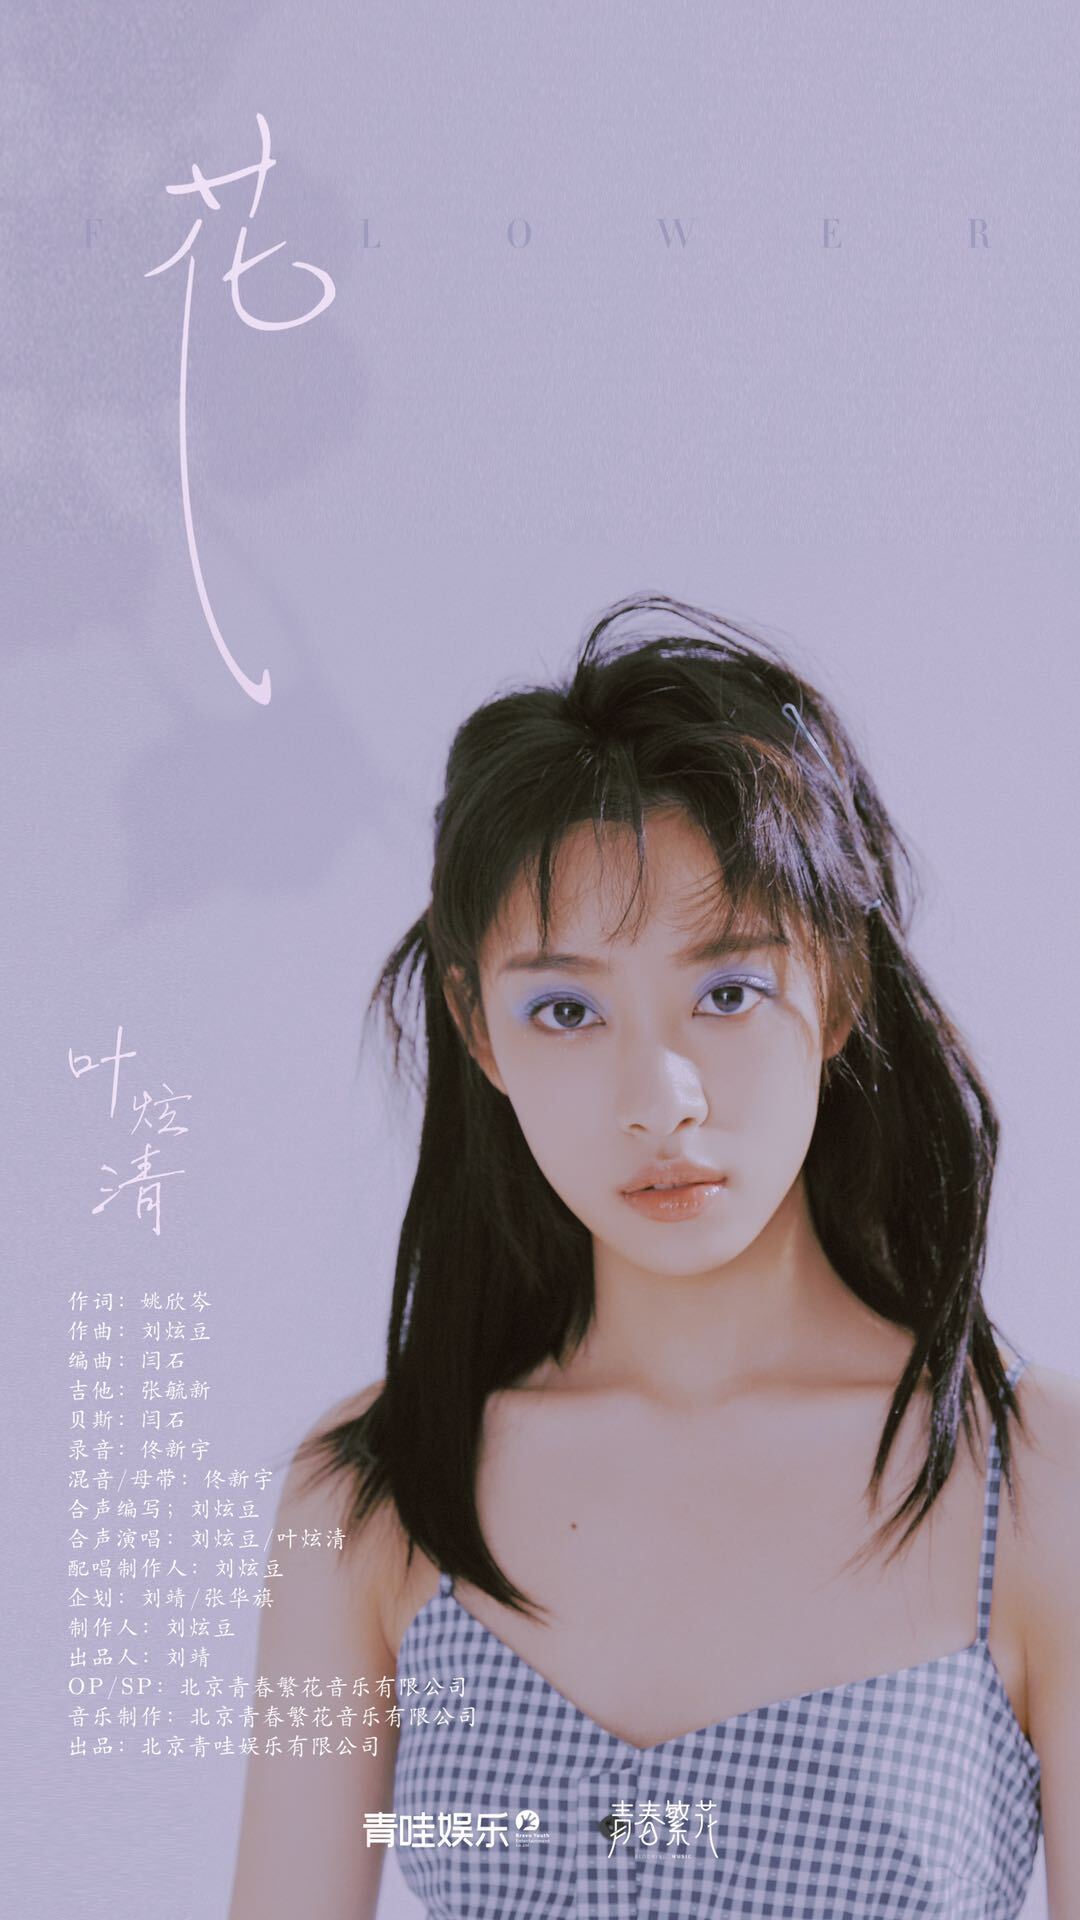 叶炫清新专辑单曲《花》上线 演绎内心世界花花物语